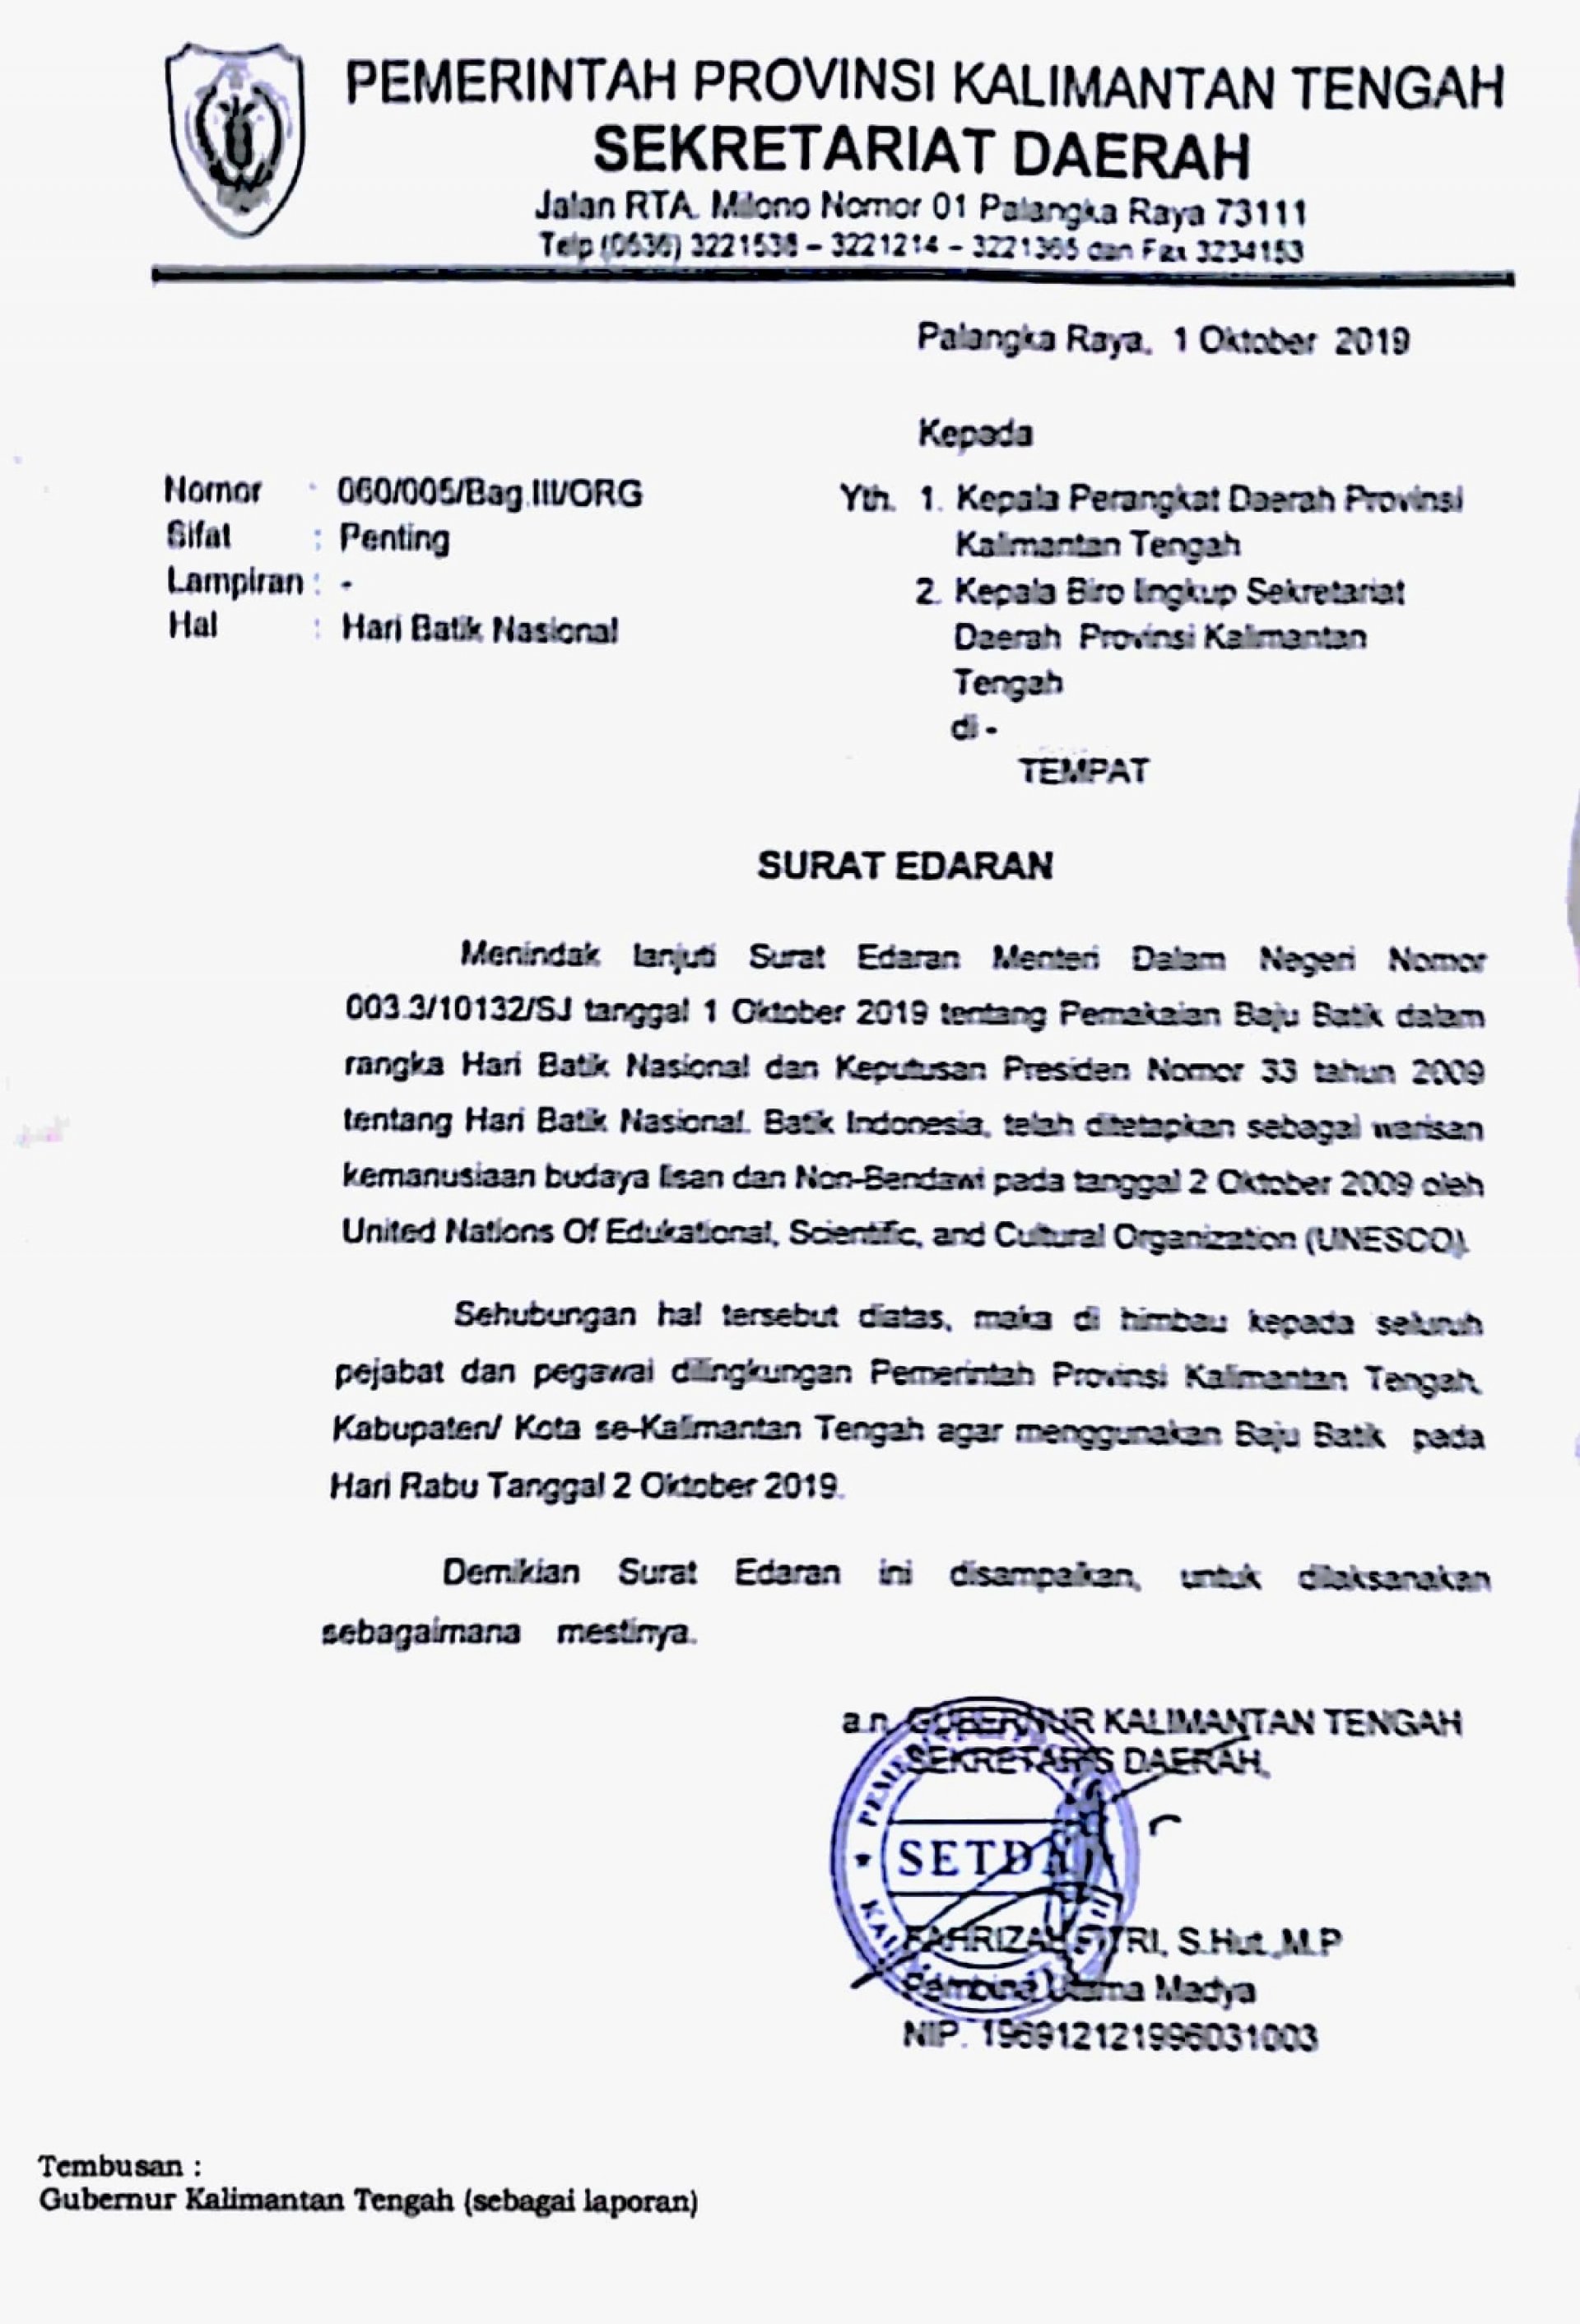 SE Sekda Kalteng Nomor: 060/005/Bag. III/ORG Perihal Hari Batik Nasional